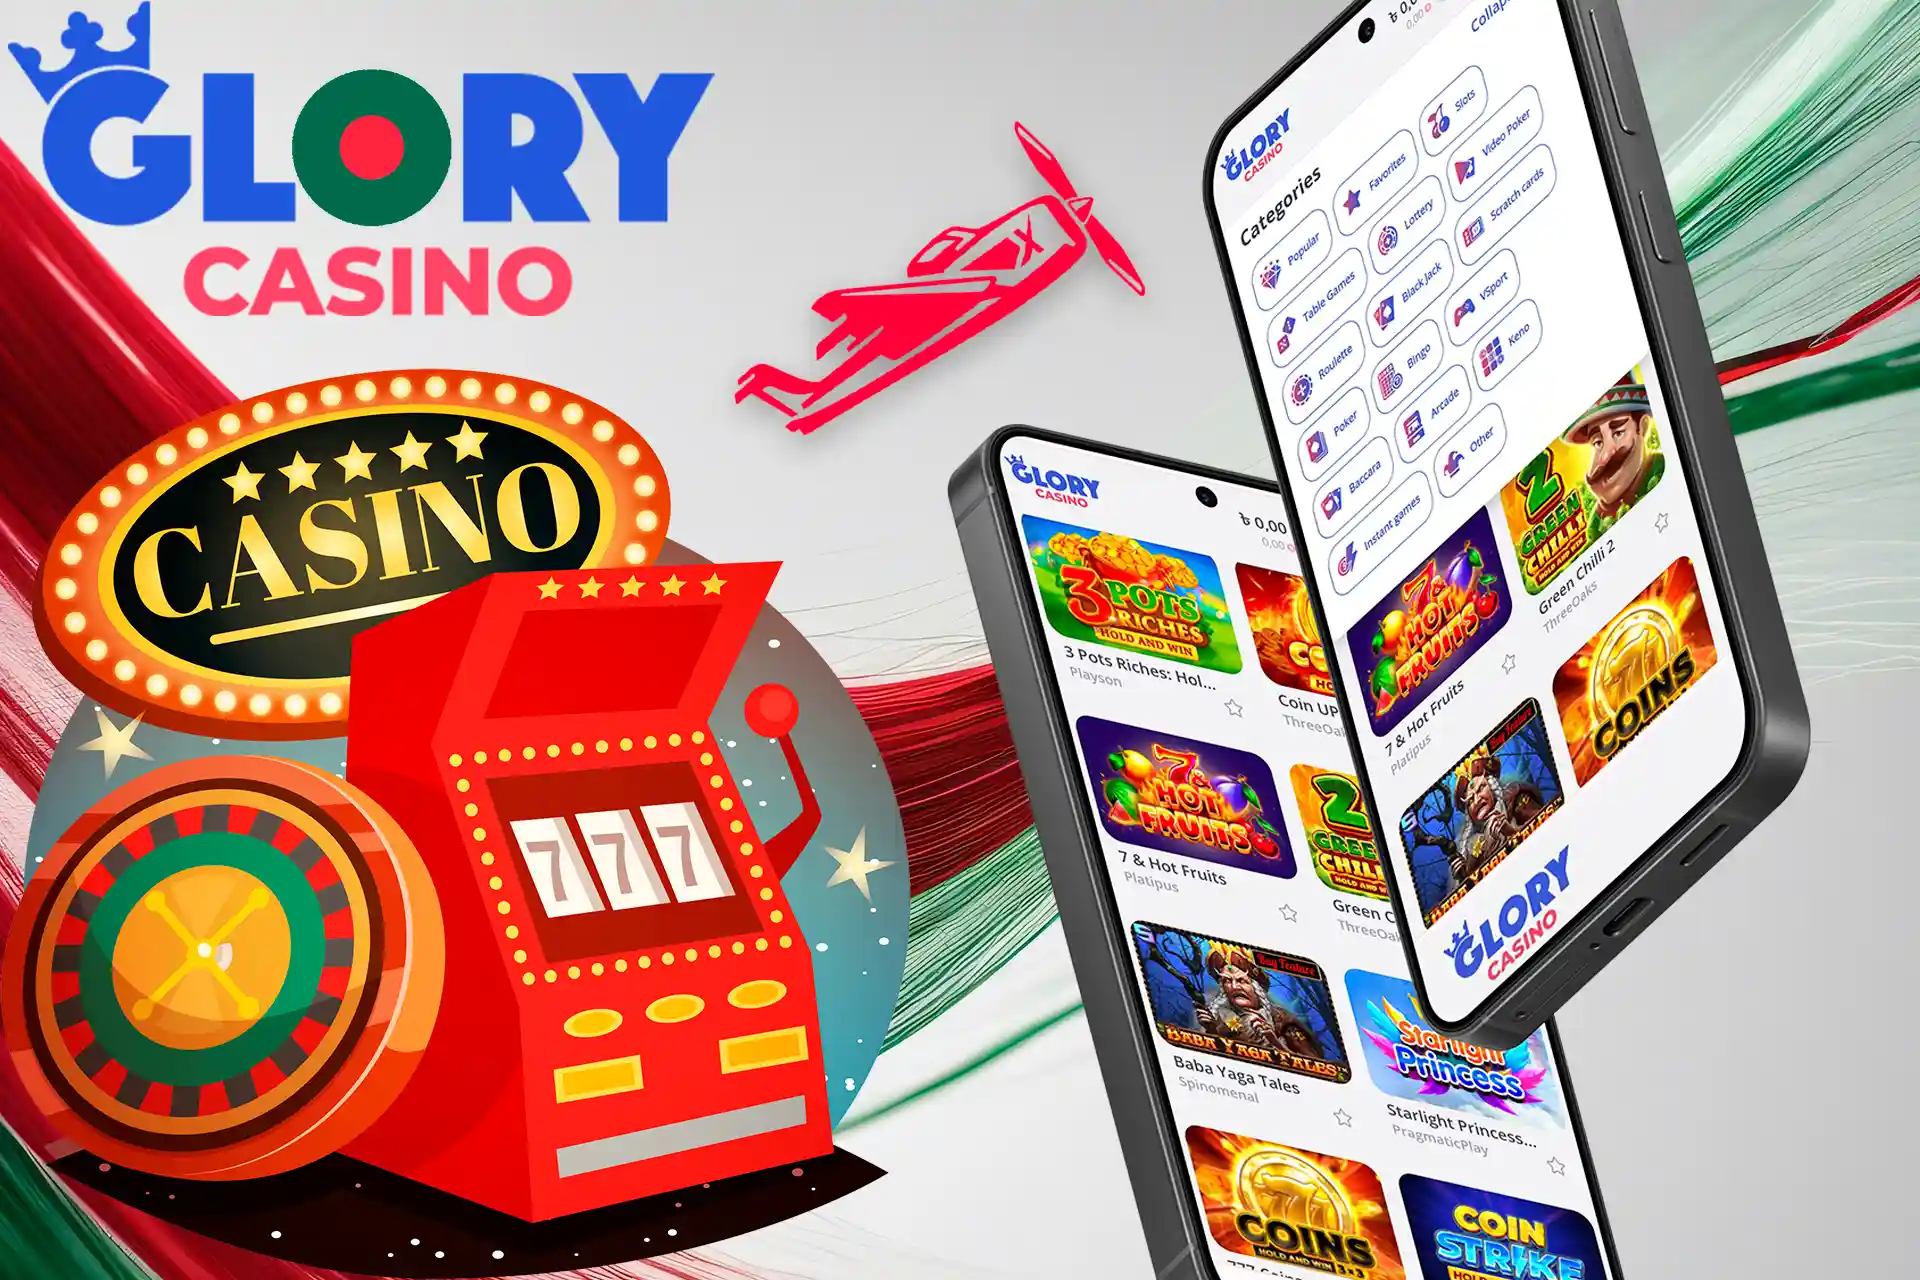 Lots of top casino games at Glory Casino Bangladesh